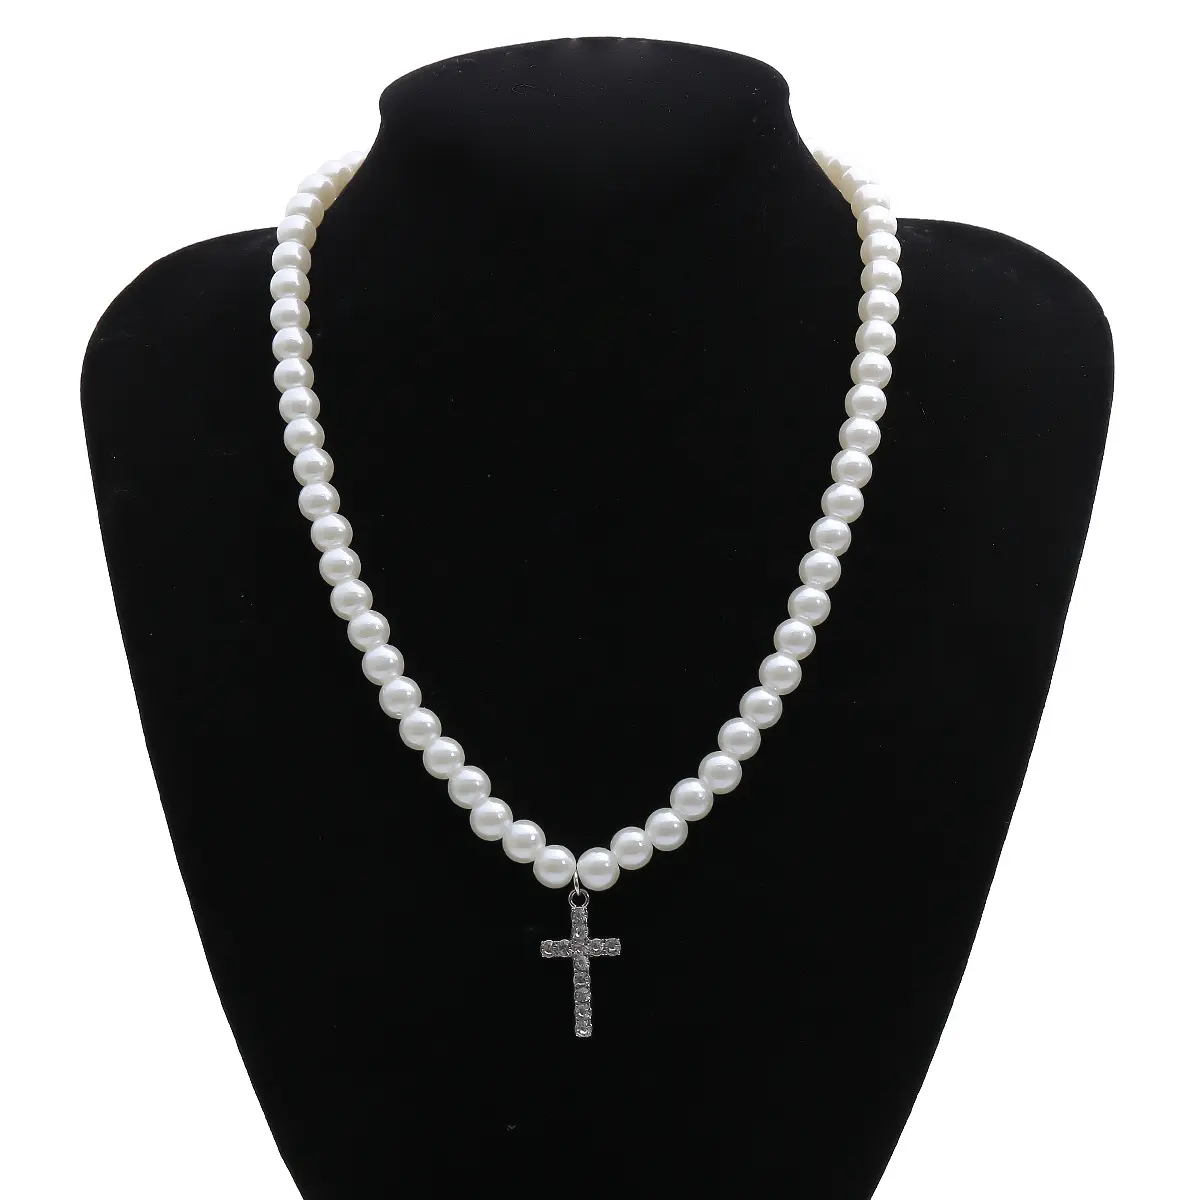 Bomlook — collier ras du cou en perles simulées, bijou de mariée, avec pendentif en croix en cristal, tendance, 2021